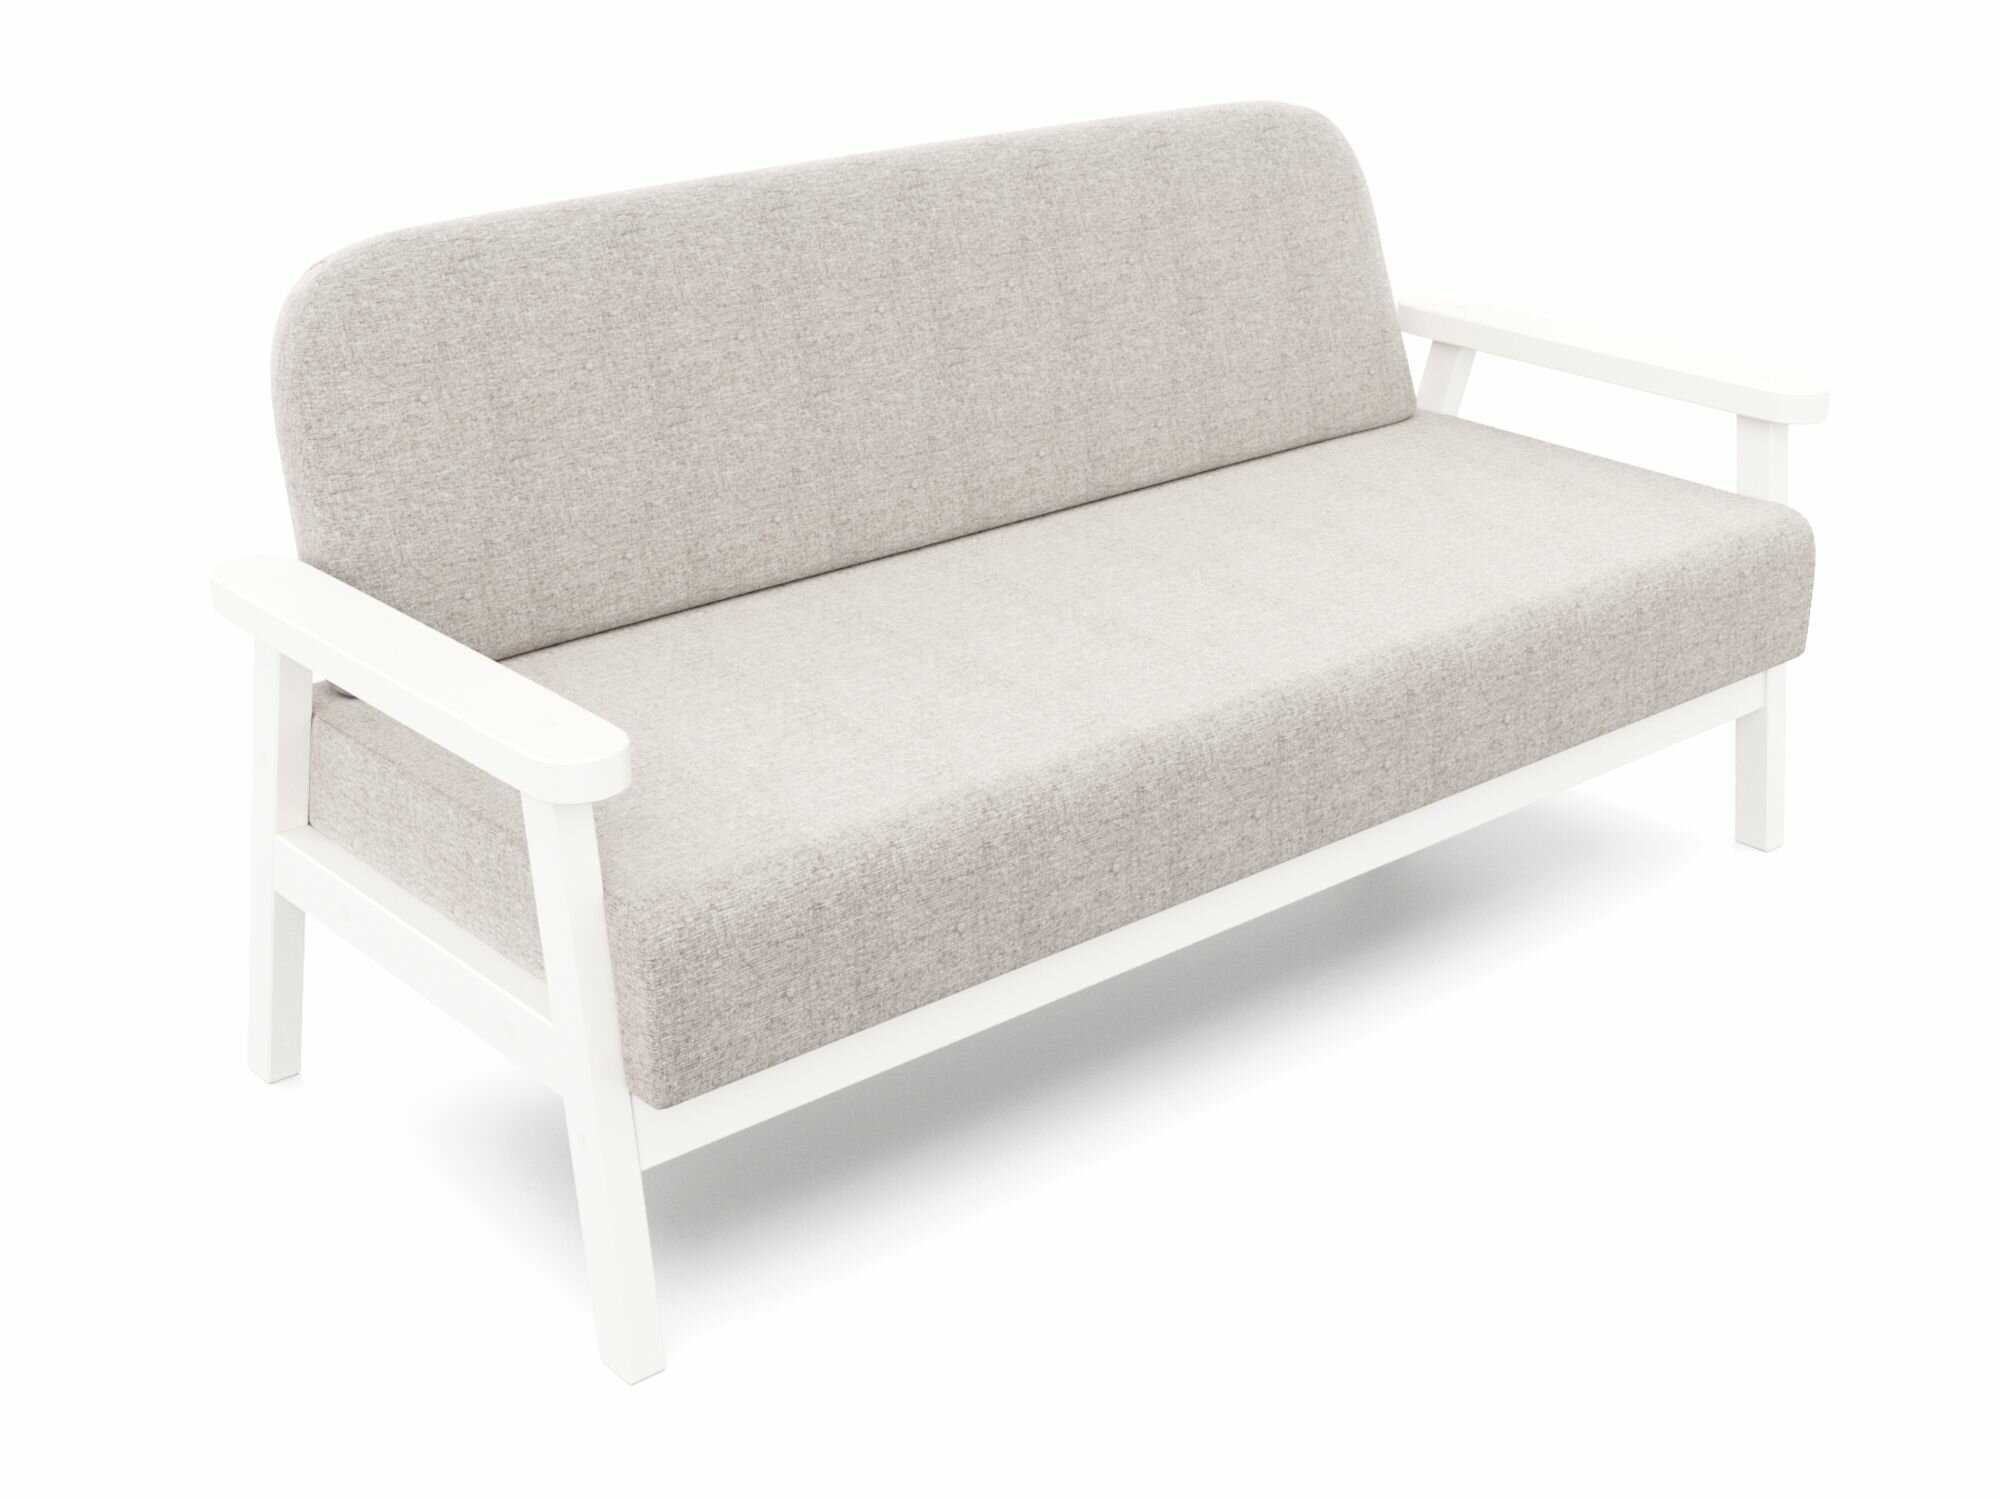 Маленький диван флори-м серый-белый, рогожка, деревянный, садовый, для кафе и бара, для офиса, скандинавский лофт